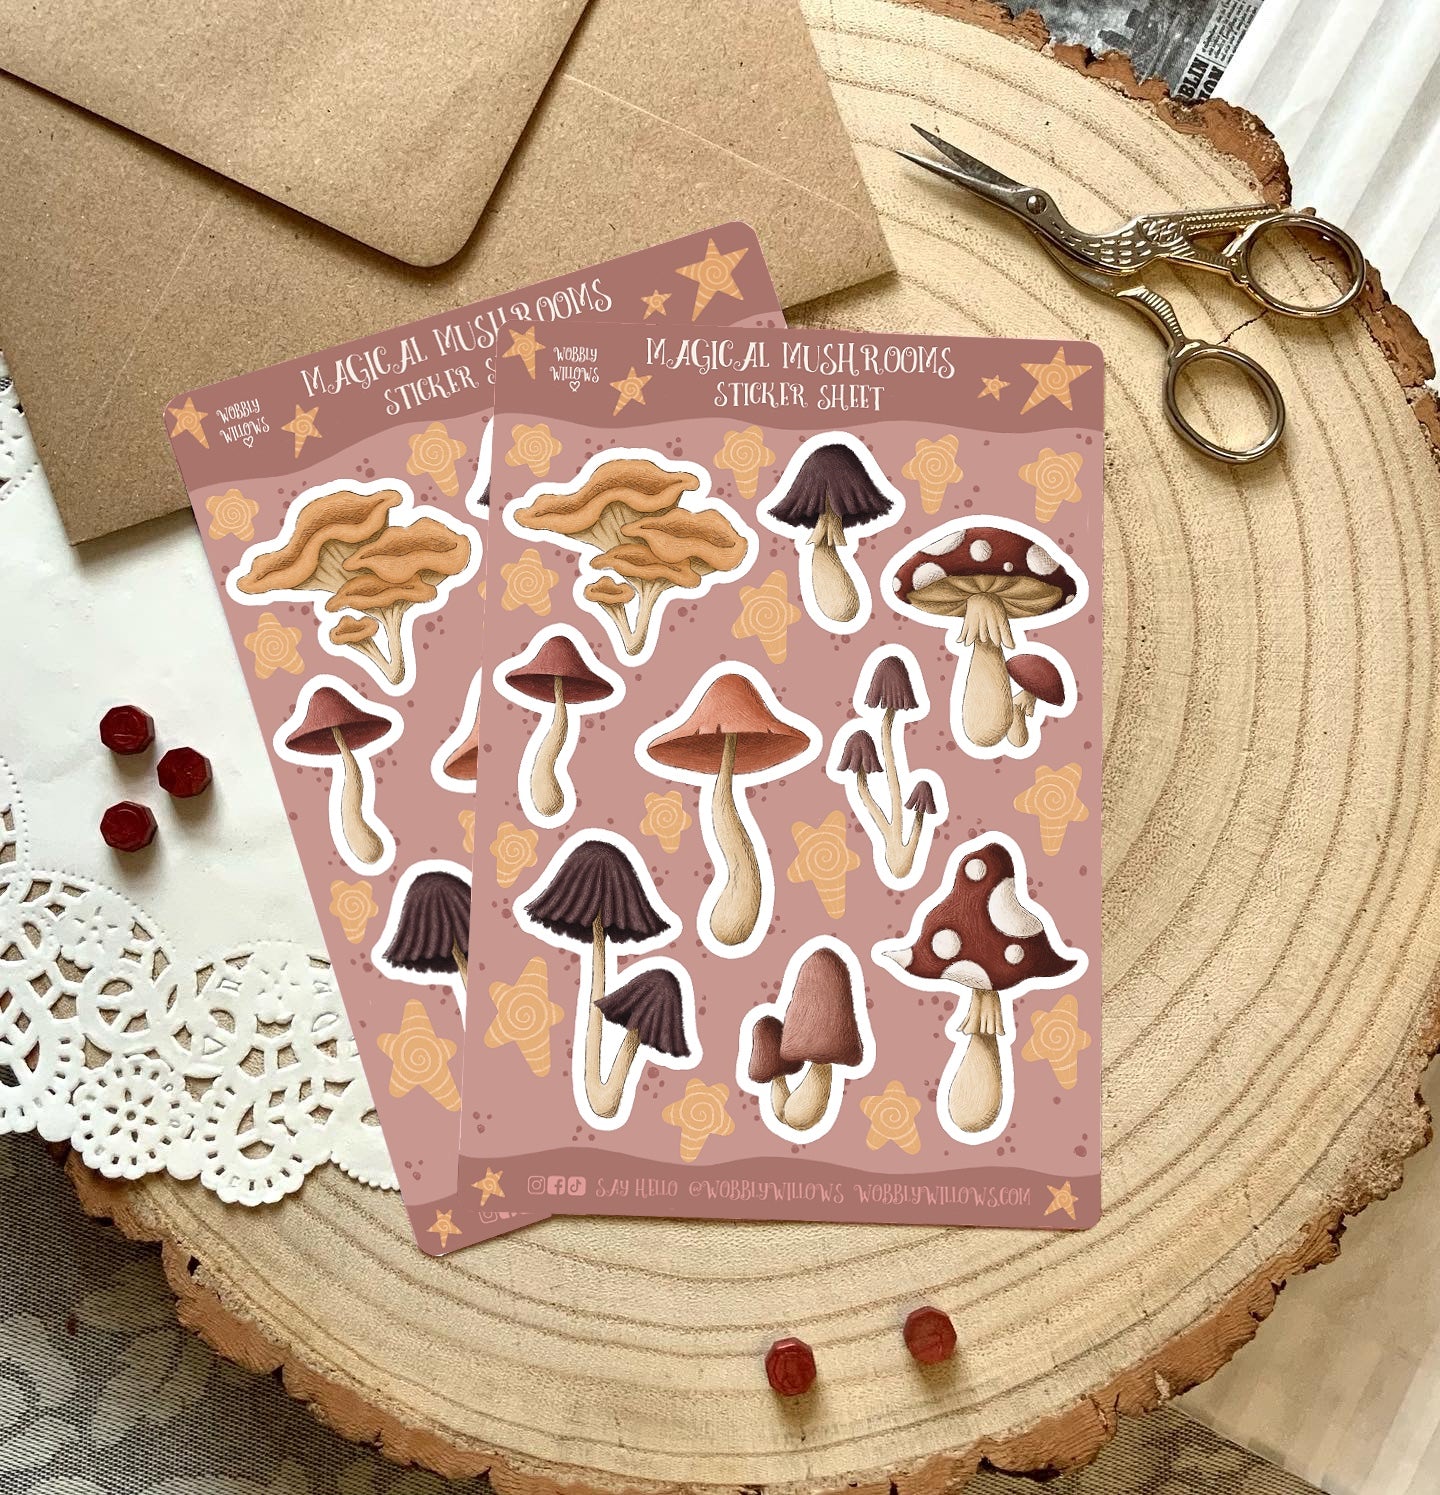 Magical mushrooms sticker sheet